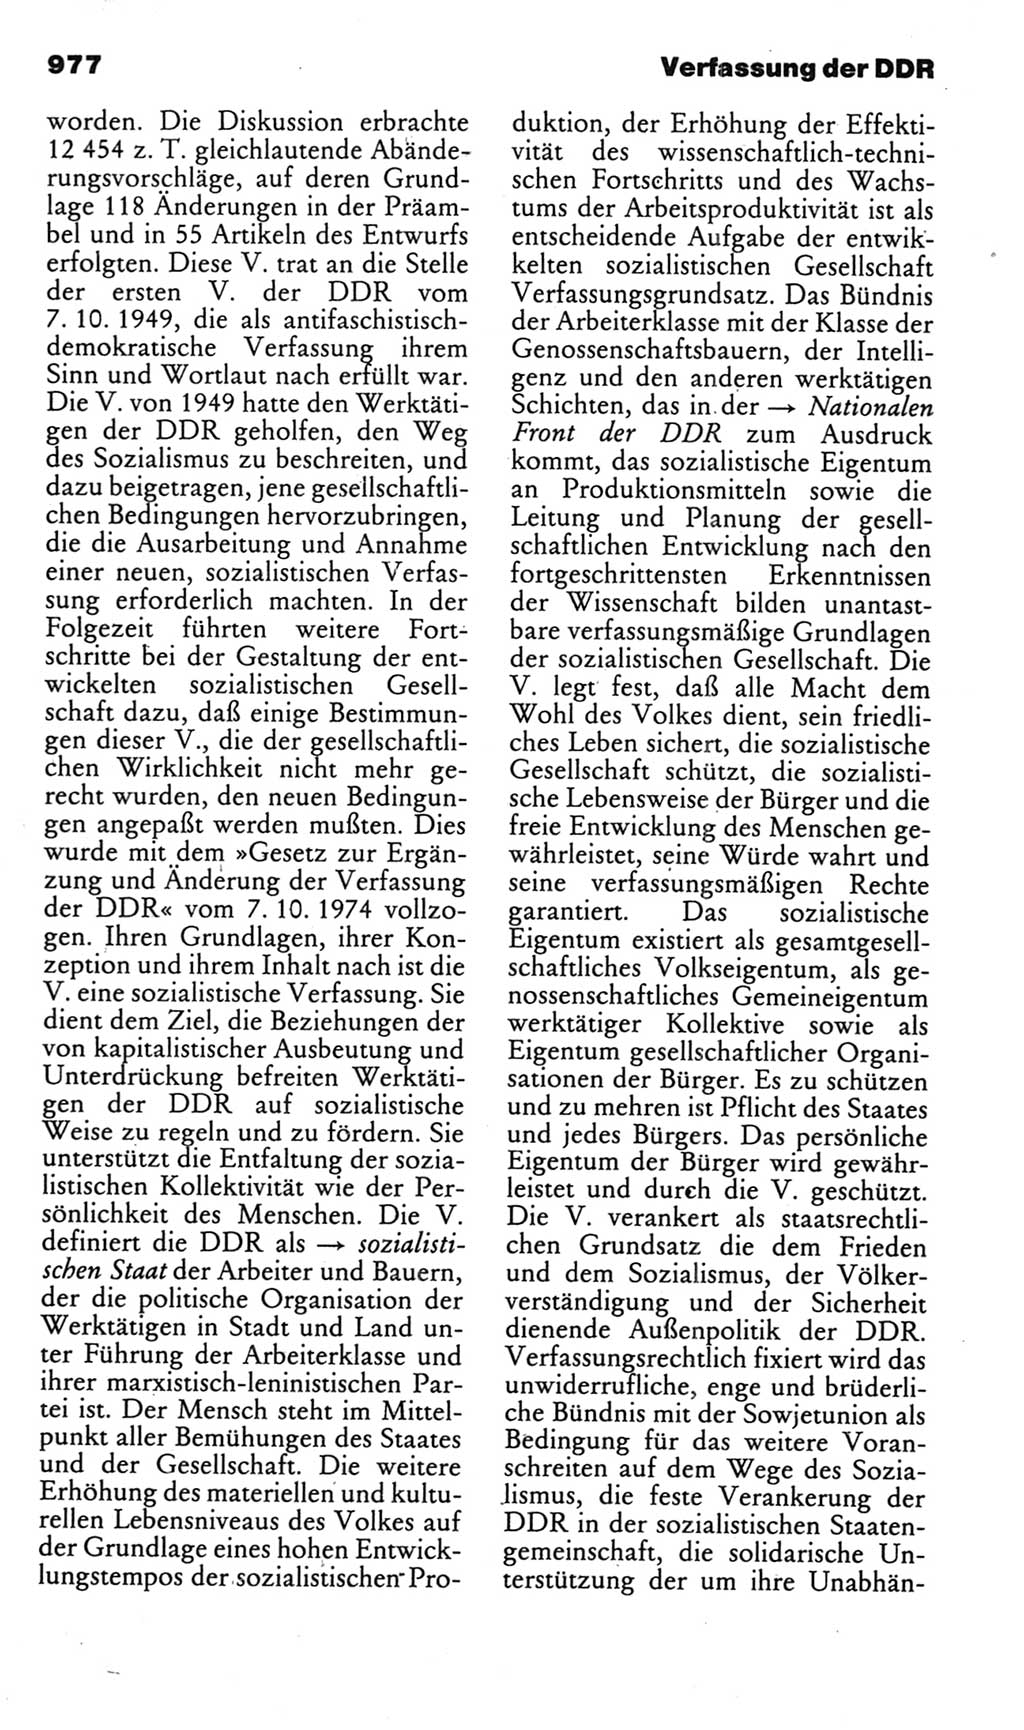 Kleines politisches Wörterbuch [Deutsche Demokratische Republik (DDR)] 1985, Seite 977 (Kl. pol. Wb. DDR 1985, S. 977)